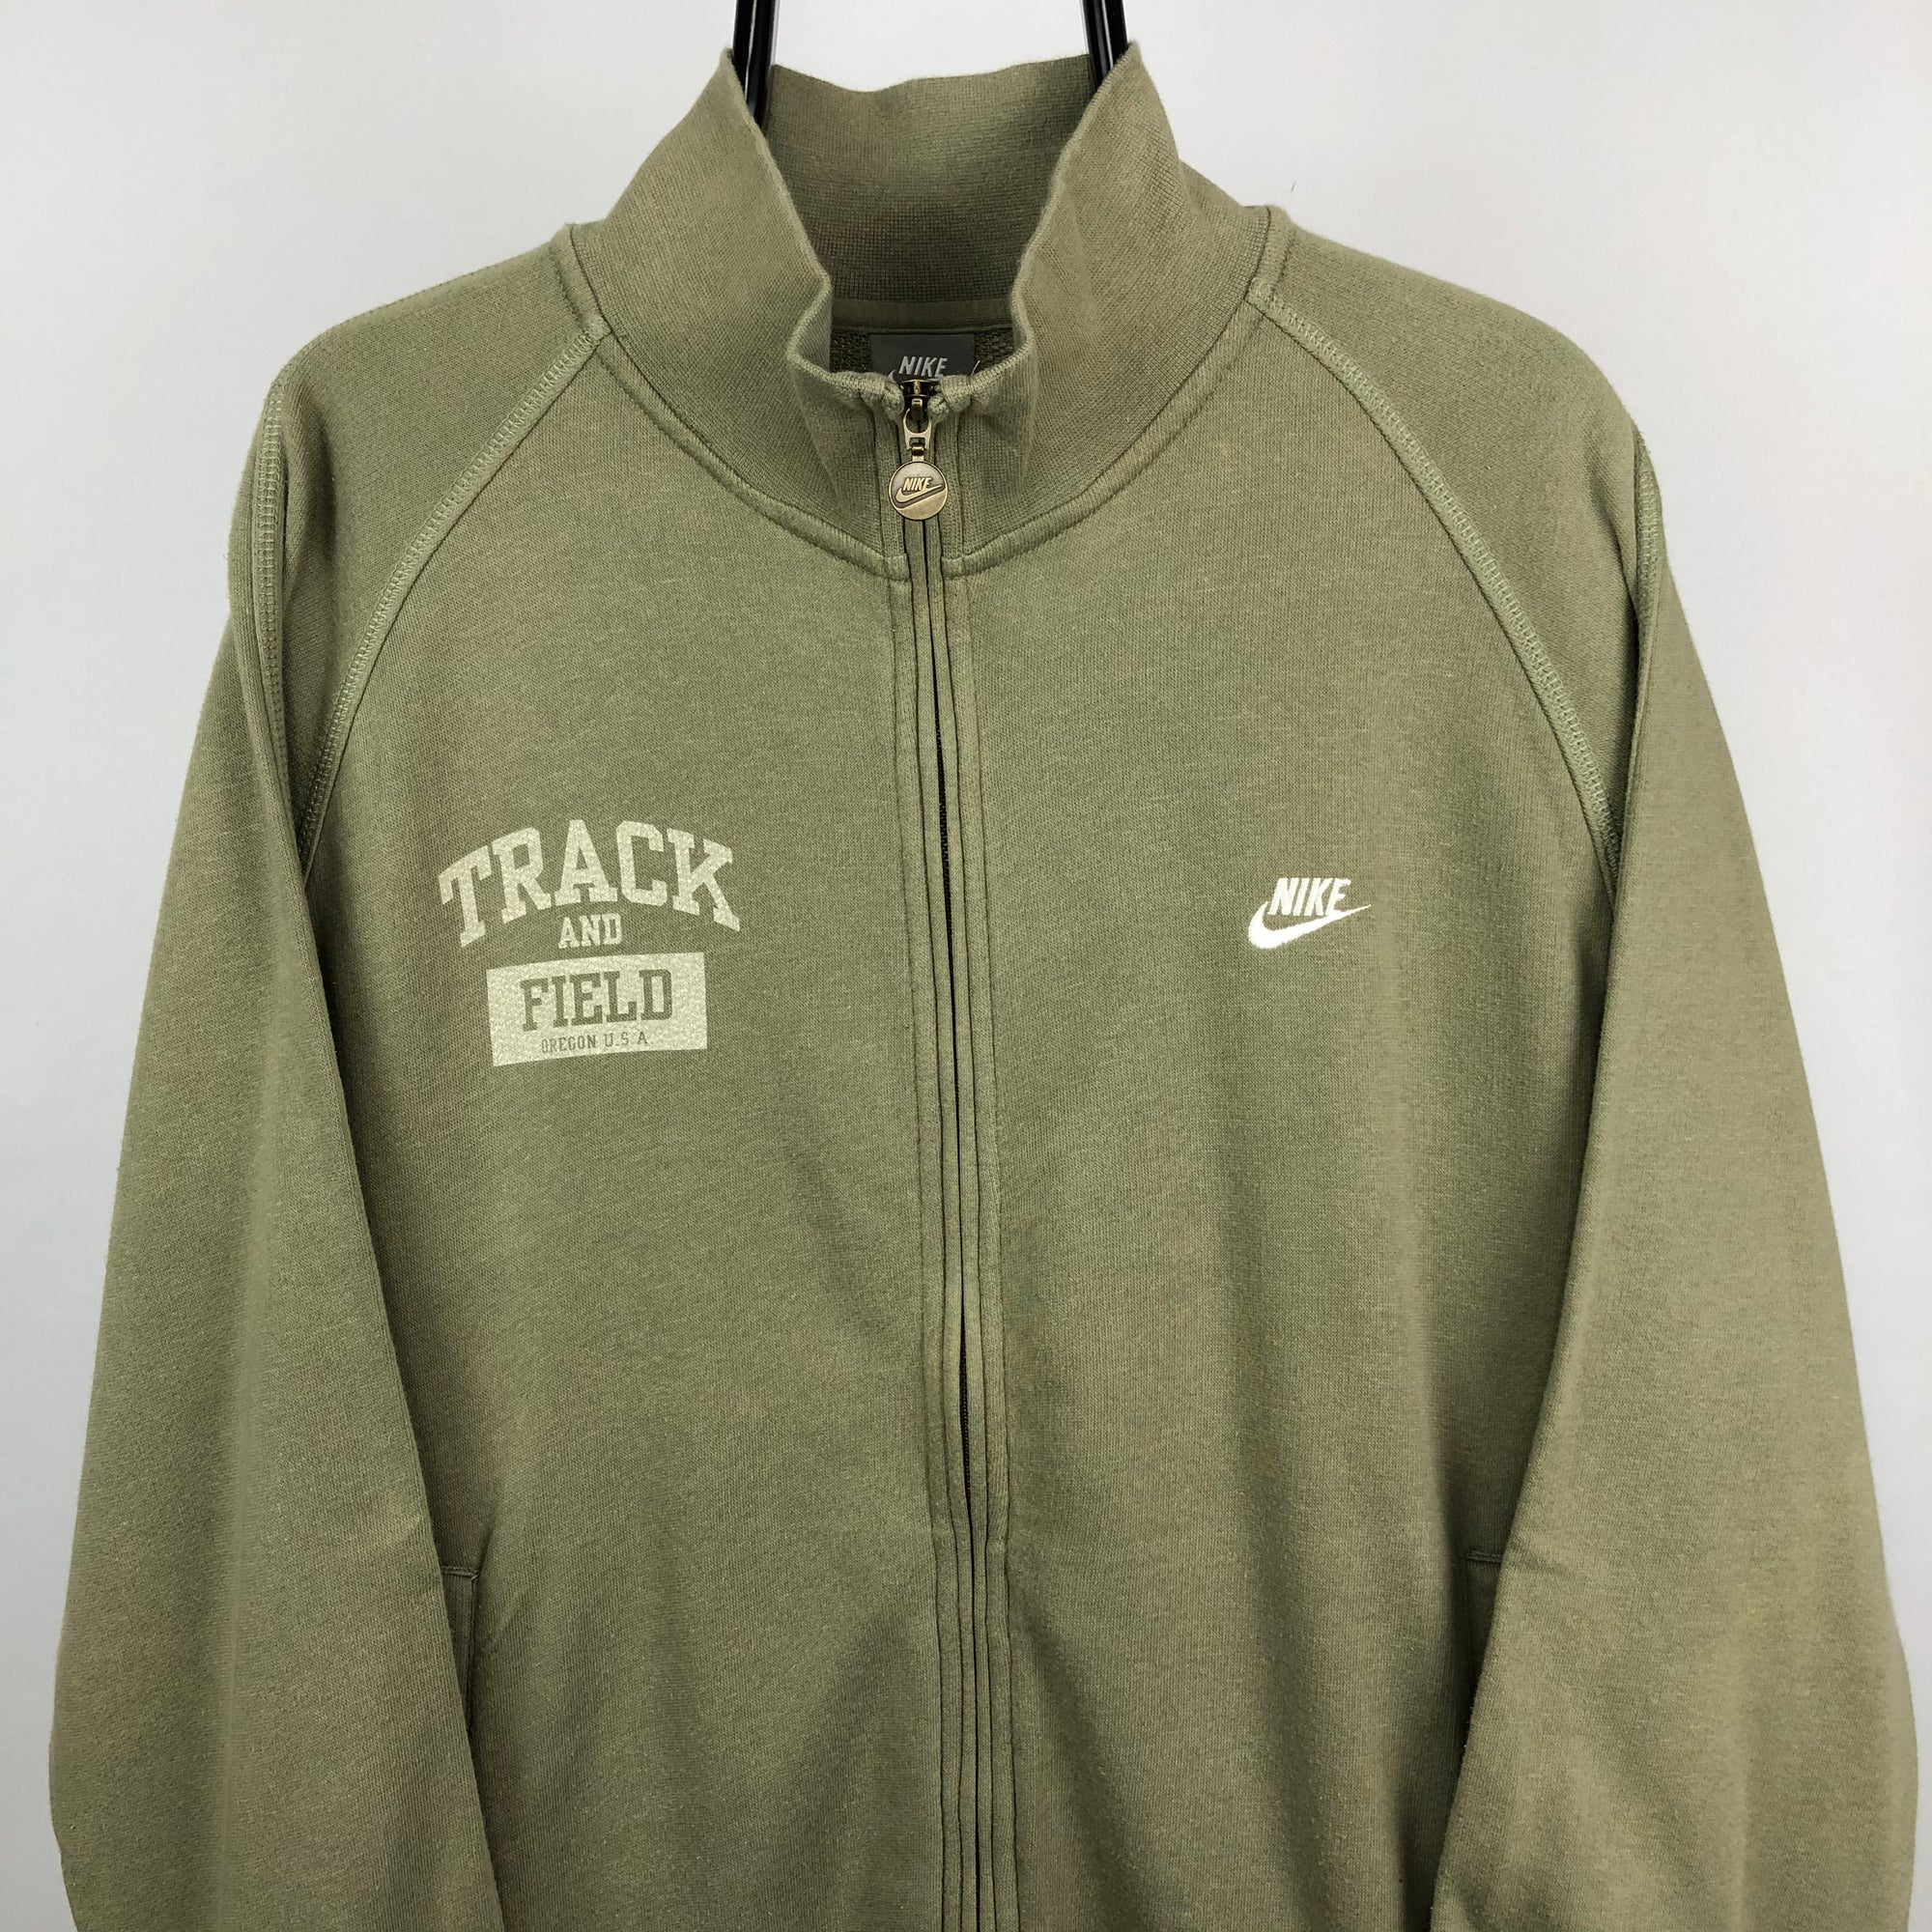 Nike Track & Field Zip Up Sweatshirt in Khaki - Men's XL/Women's XXL